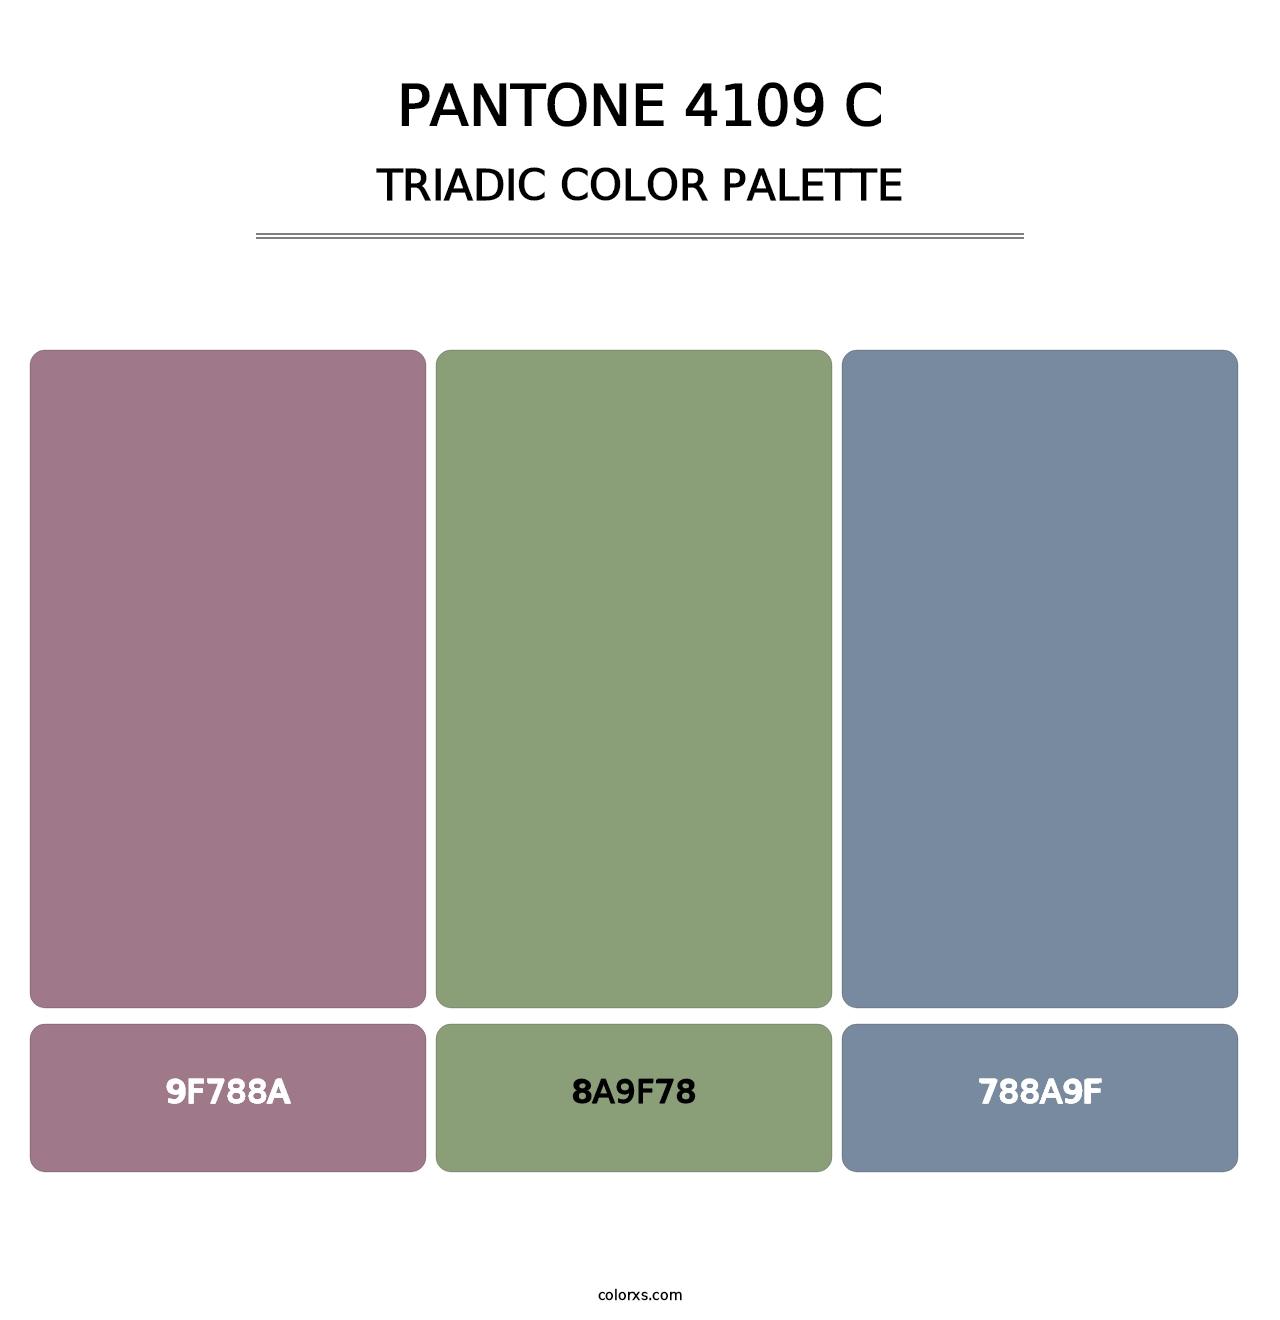 PANTONE 4109 C - Triadic Color Palette